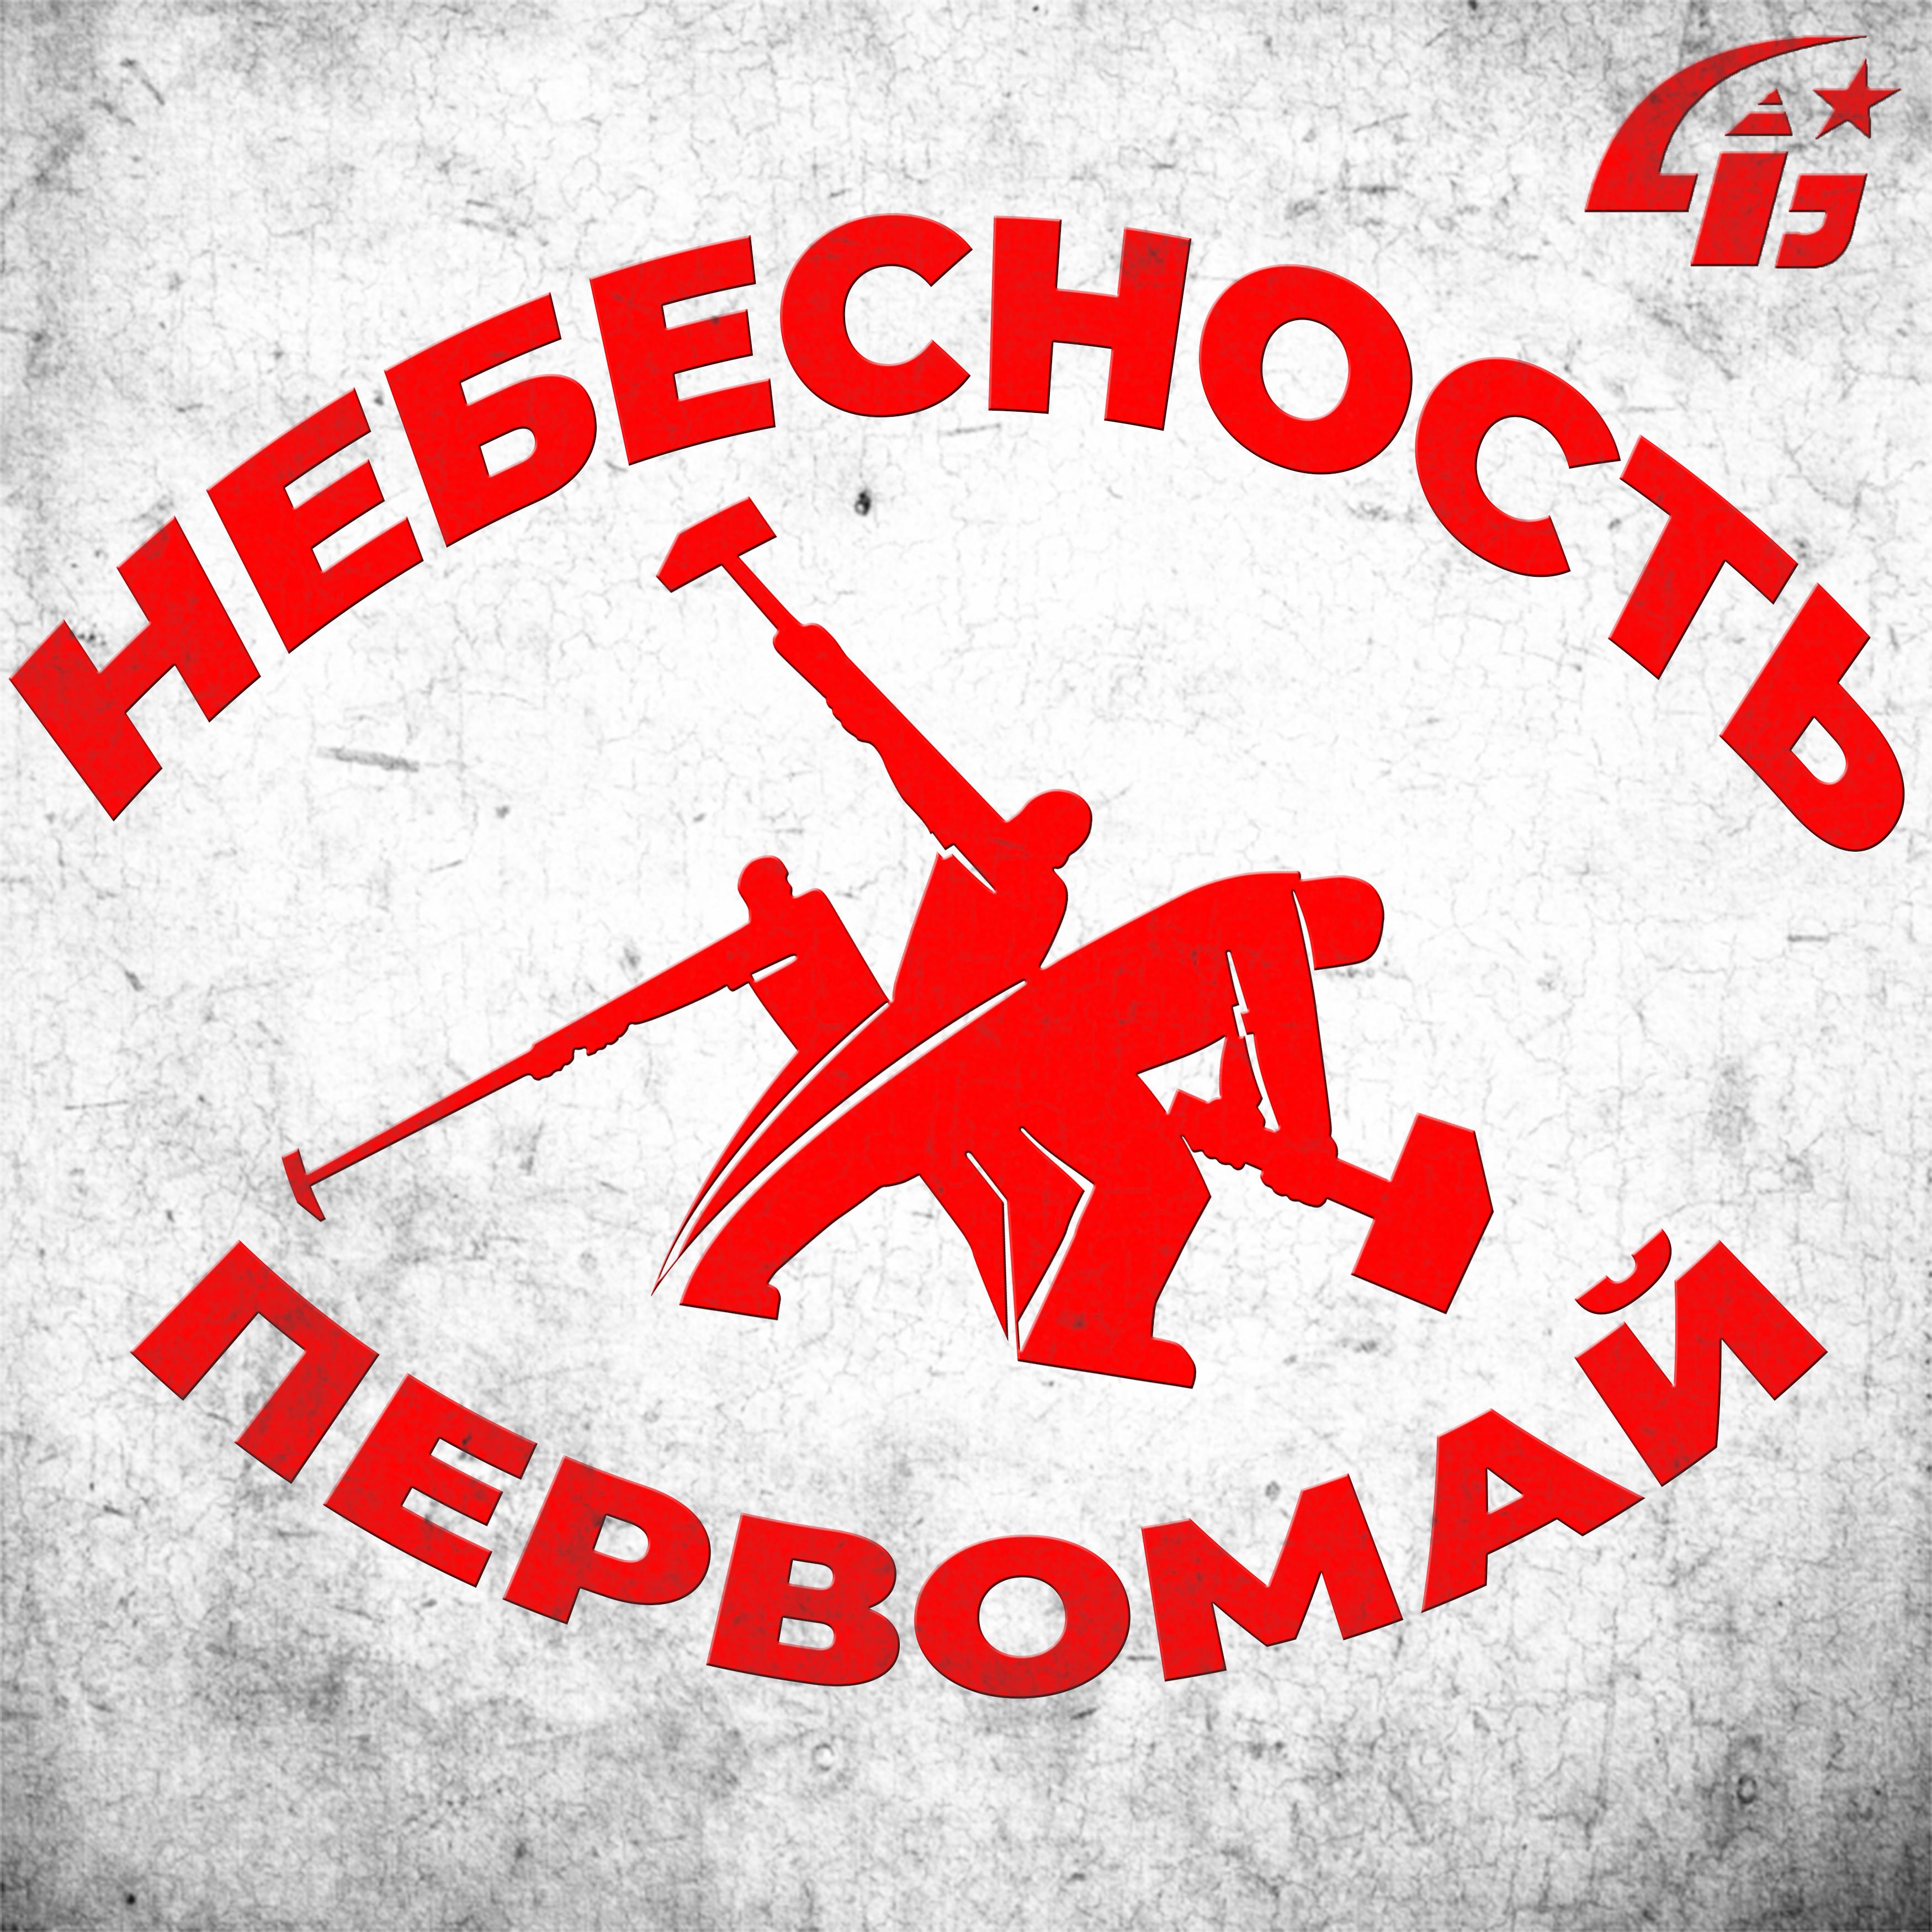 Постер альбома Первомай